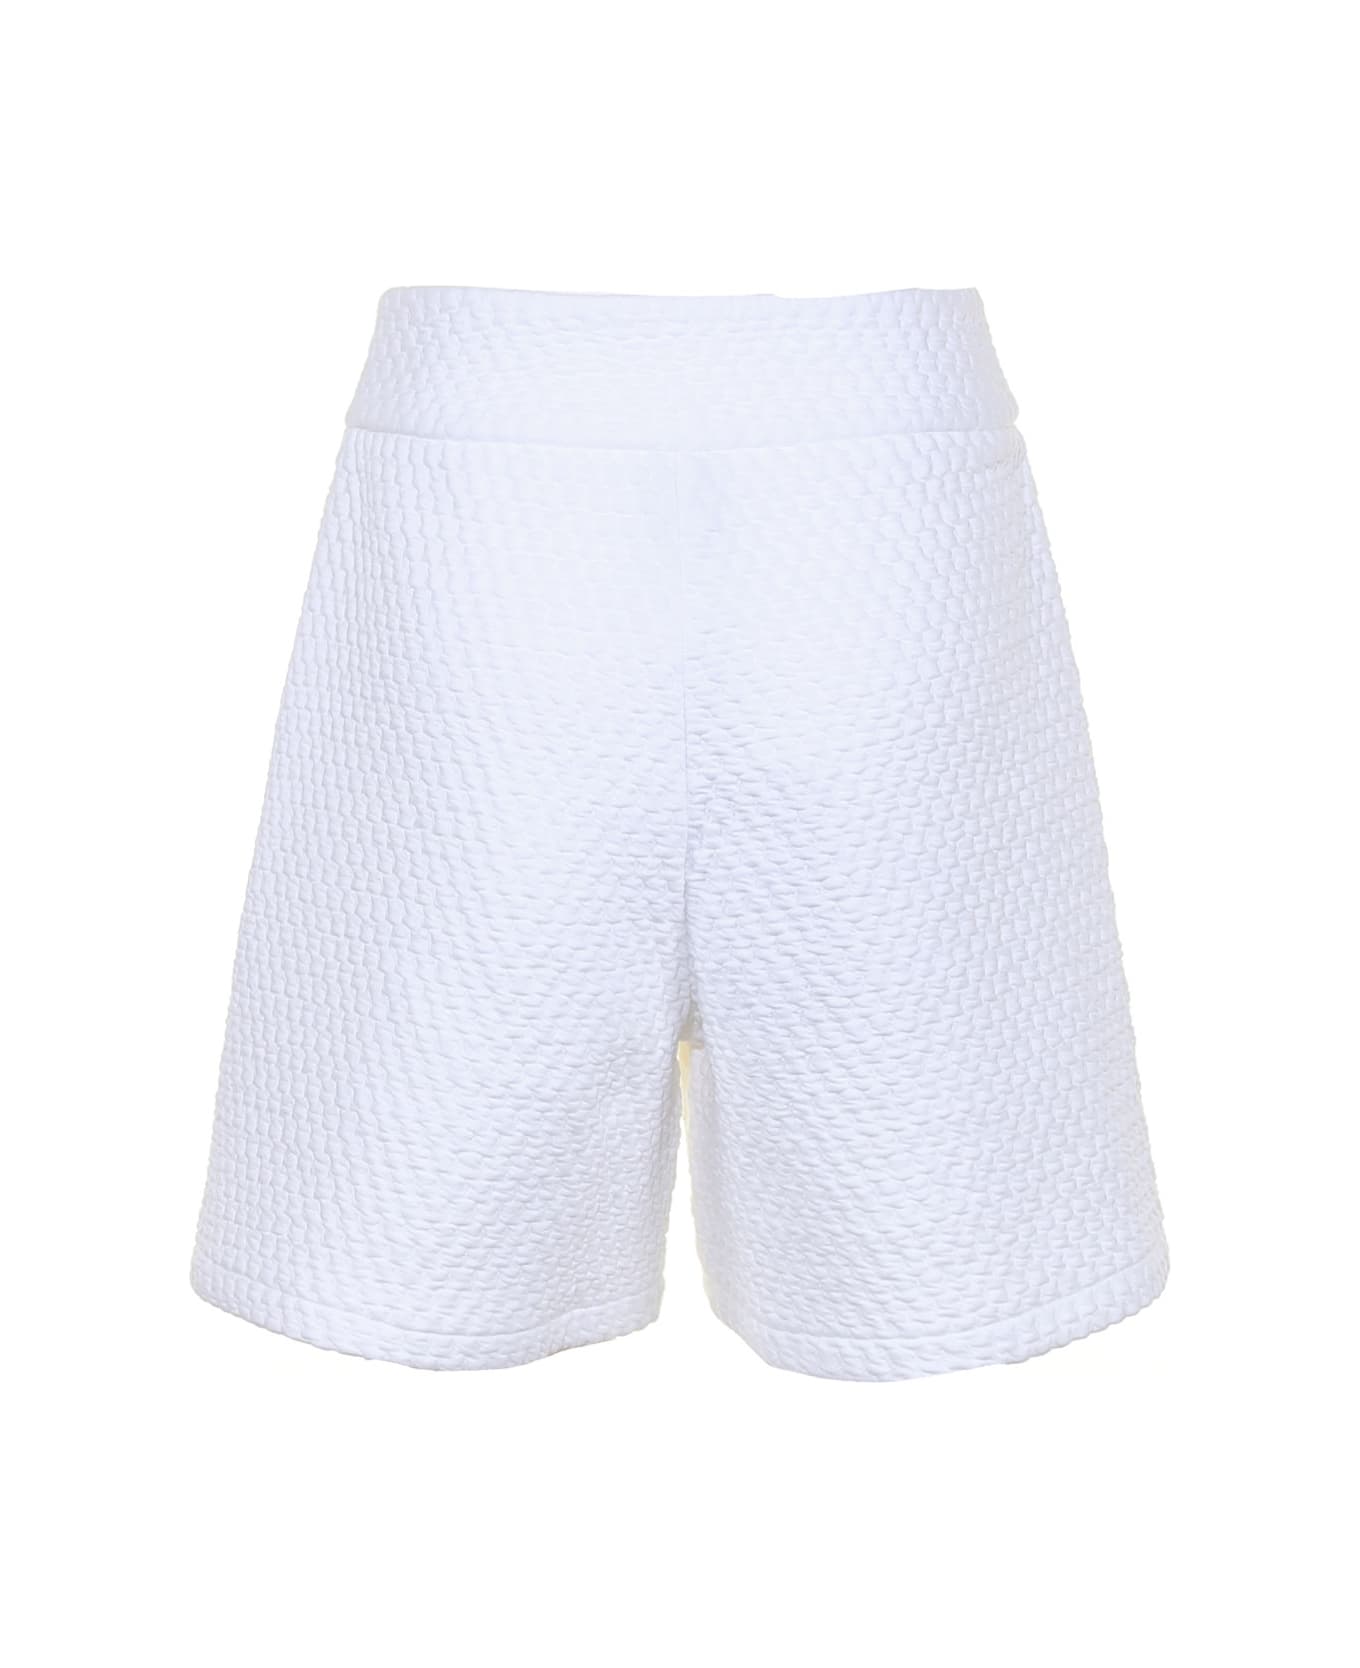 Colmar Shorts With Logo - BIANCO